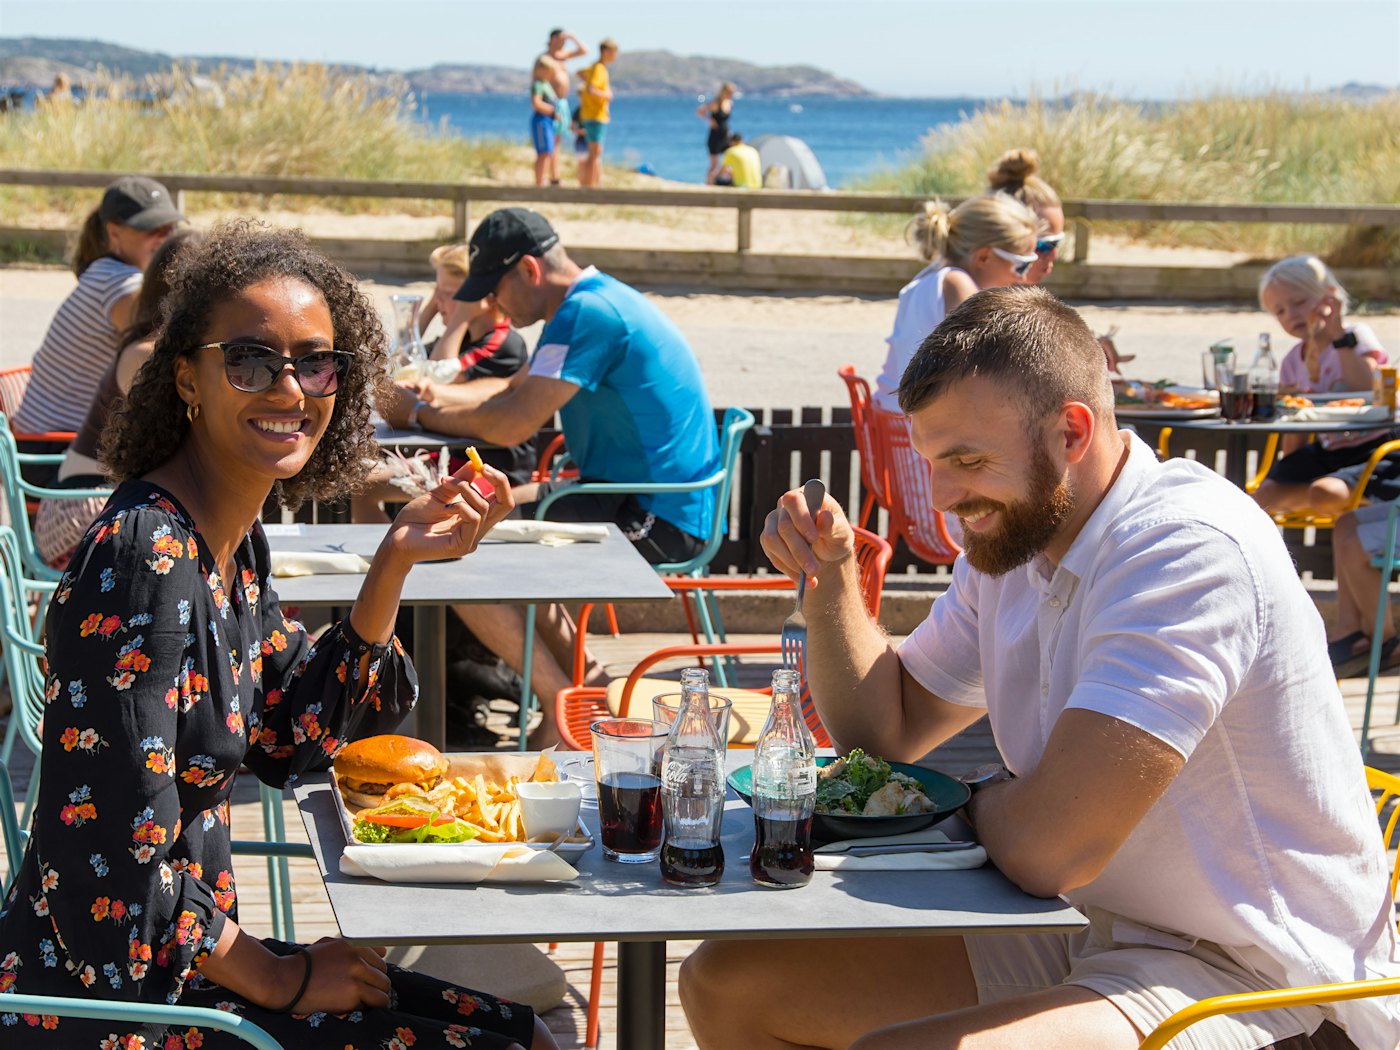 Mann og kvinne sitter og spiser på uteservering. I bakgrunnen ser man stranden. Kvinnen smiler mot kamerat, mannen ler ned mot bordet.